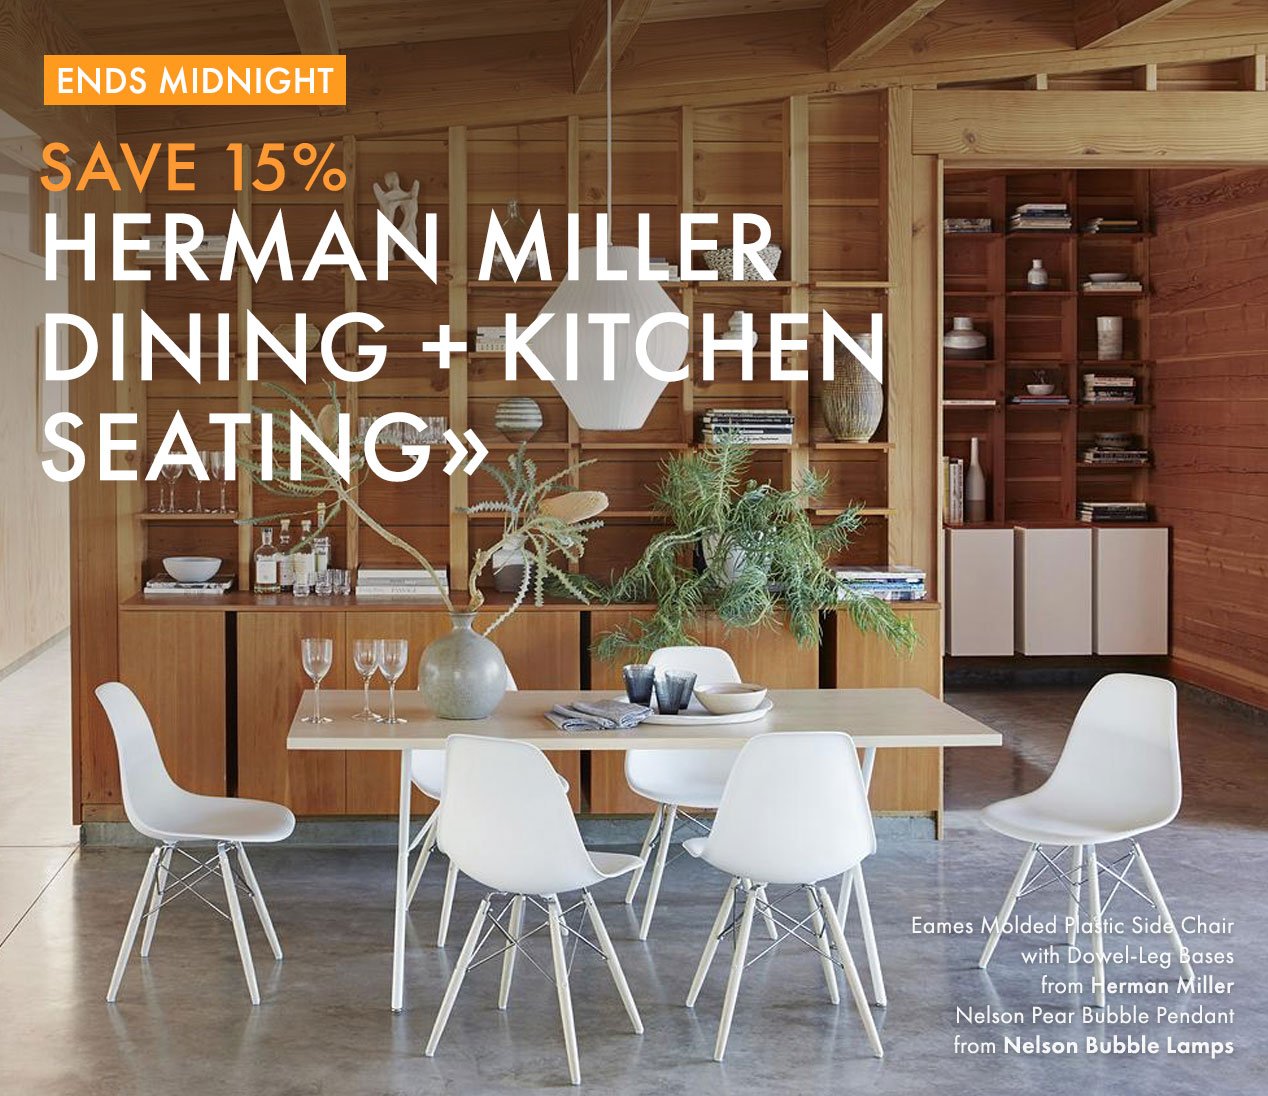 Herman Miller Dining + Kitchen Seating.